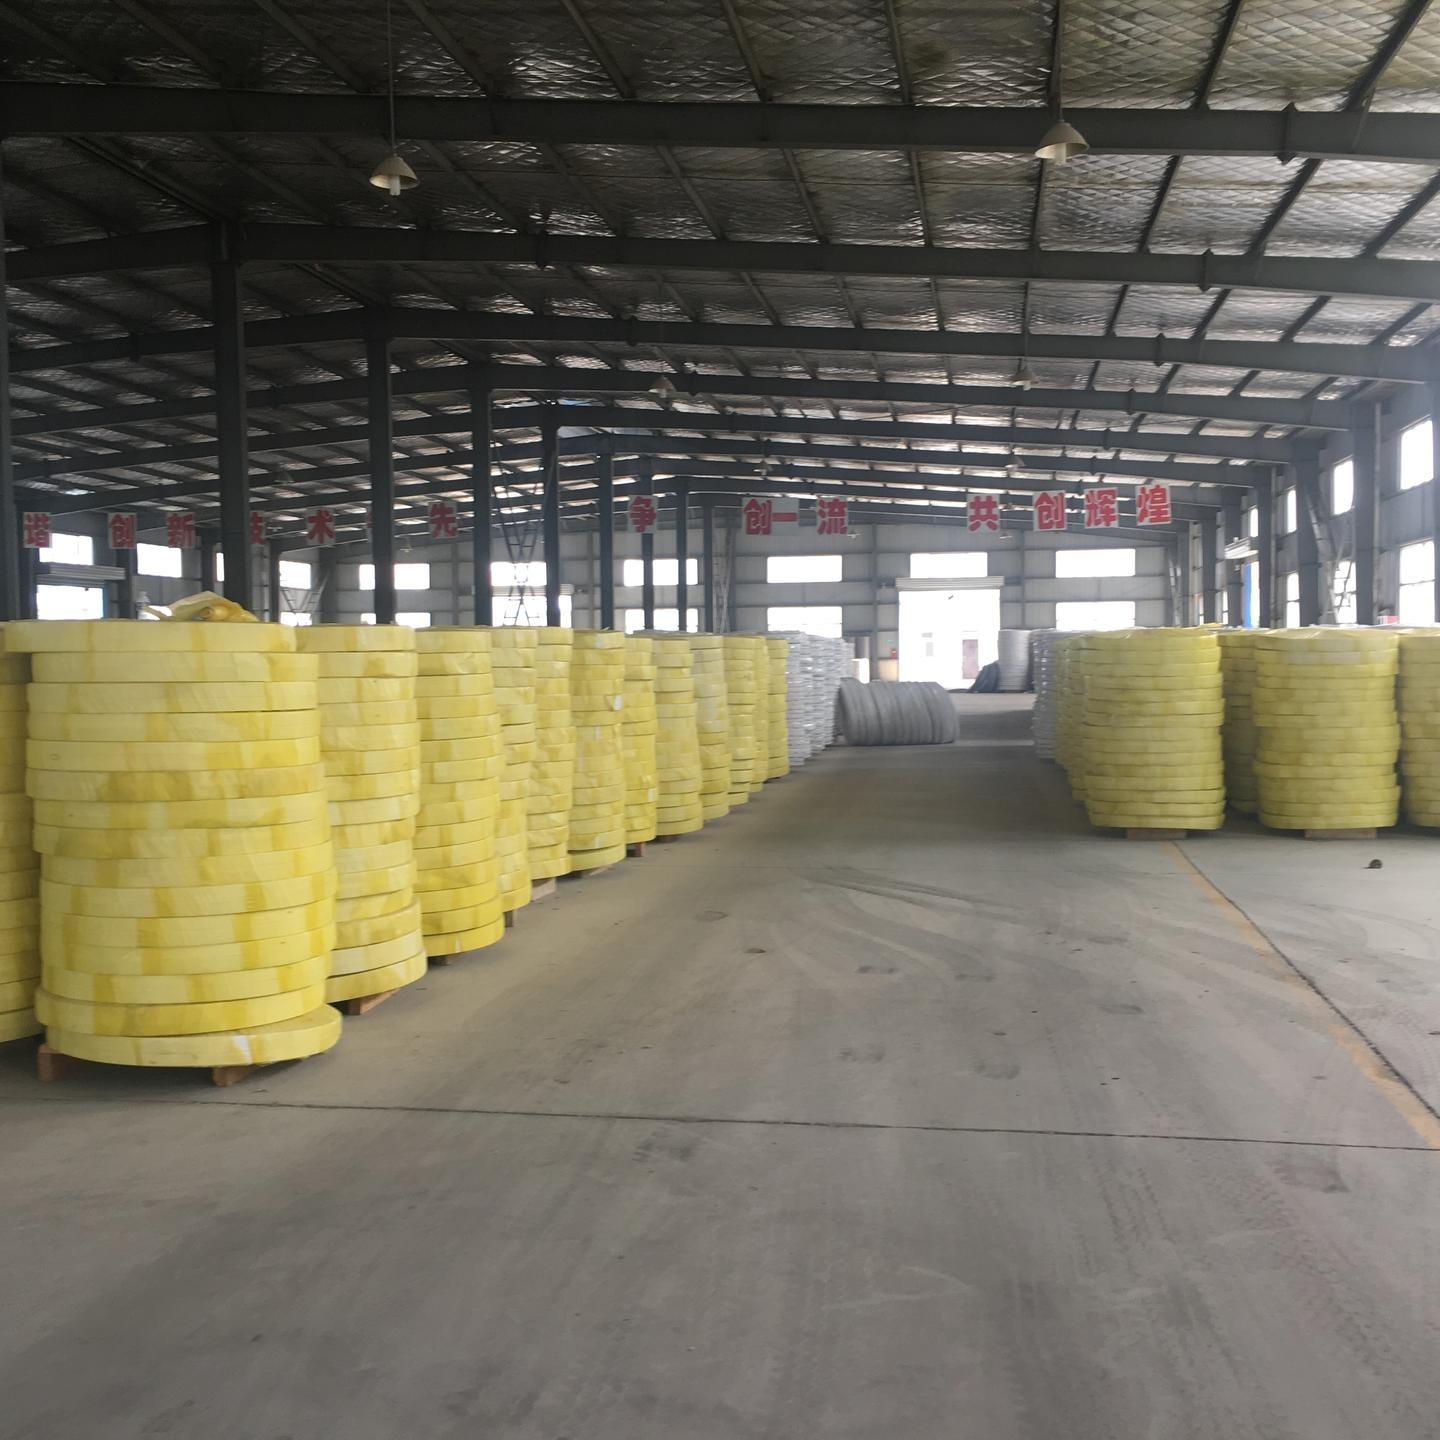 坤旭厂家生产高性能塑料排水板 铁路专用塑料排水板 C型塑料排水板 塑料排水带施工